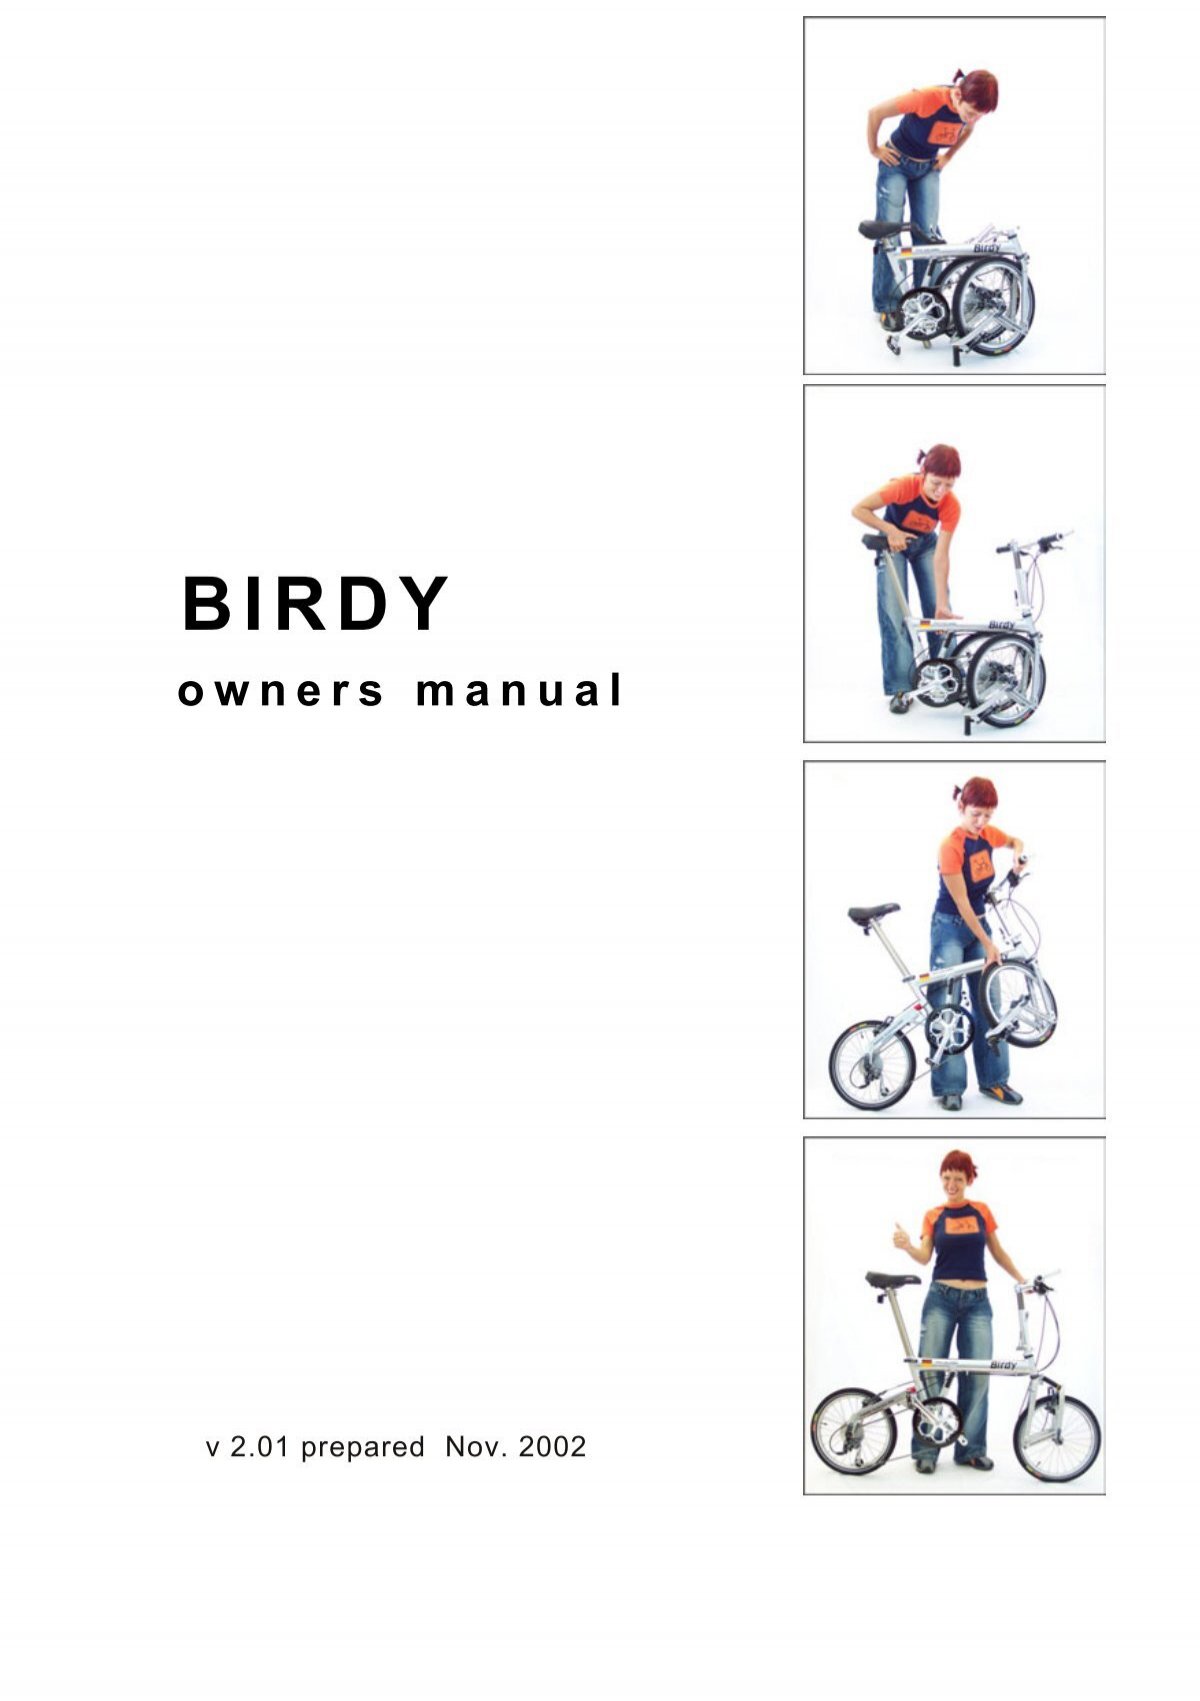 birdy bike dealers